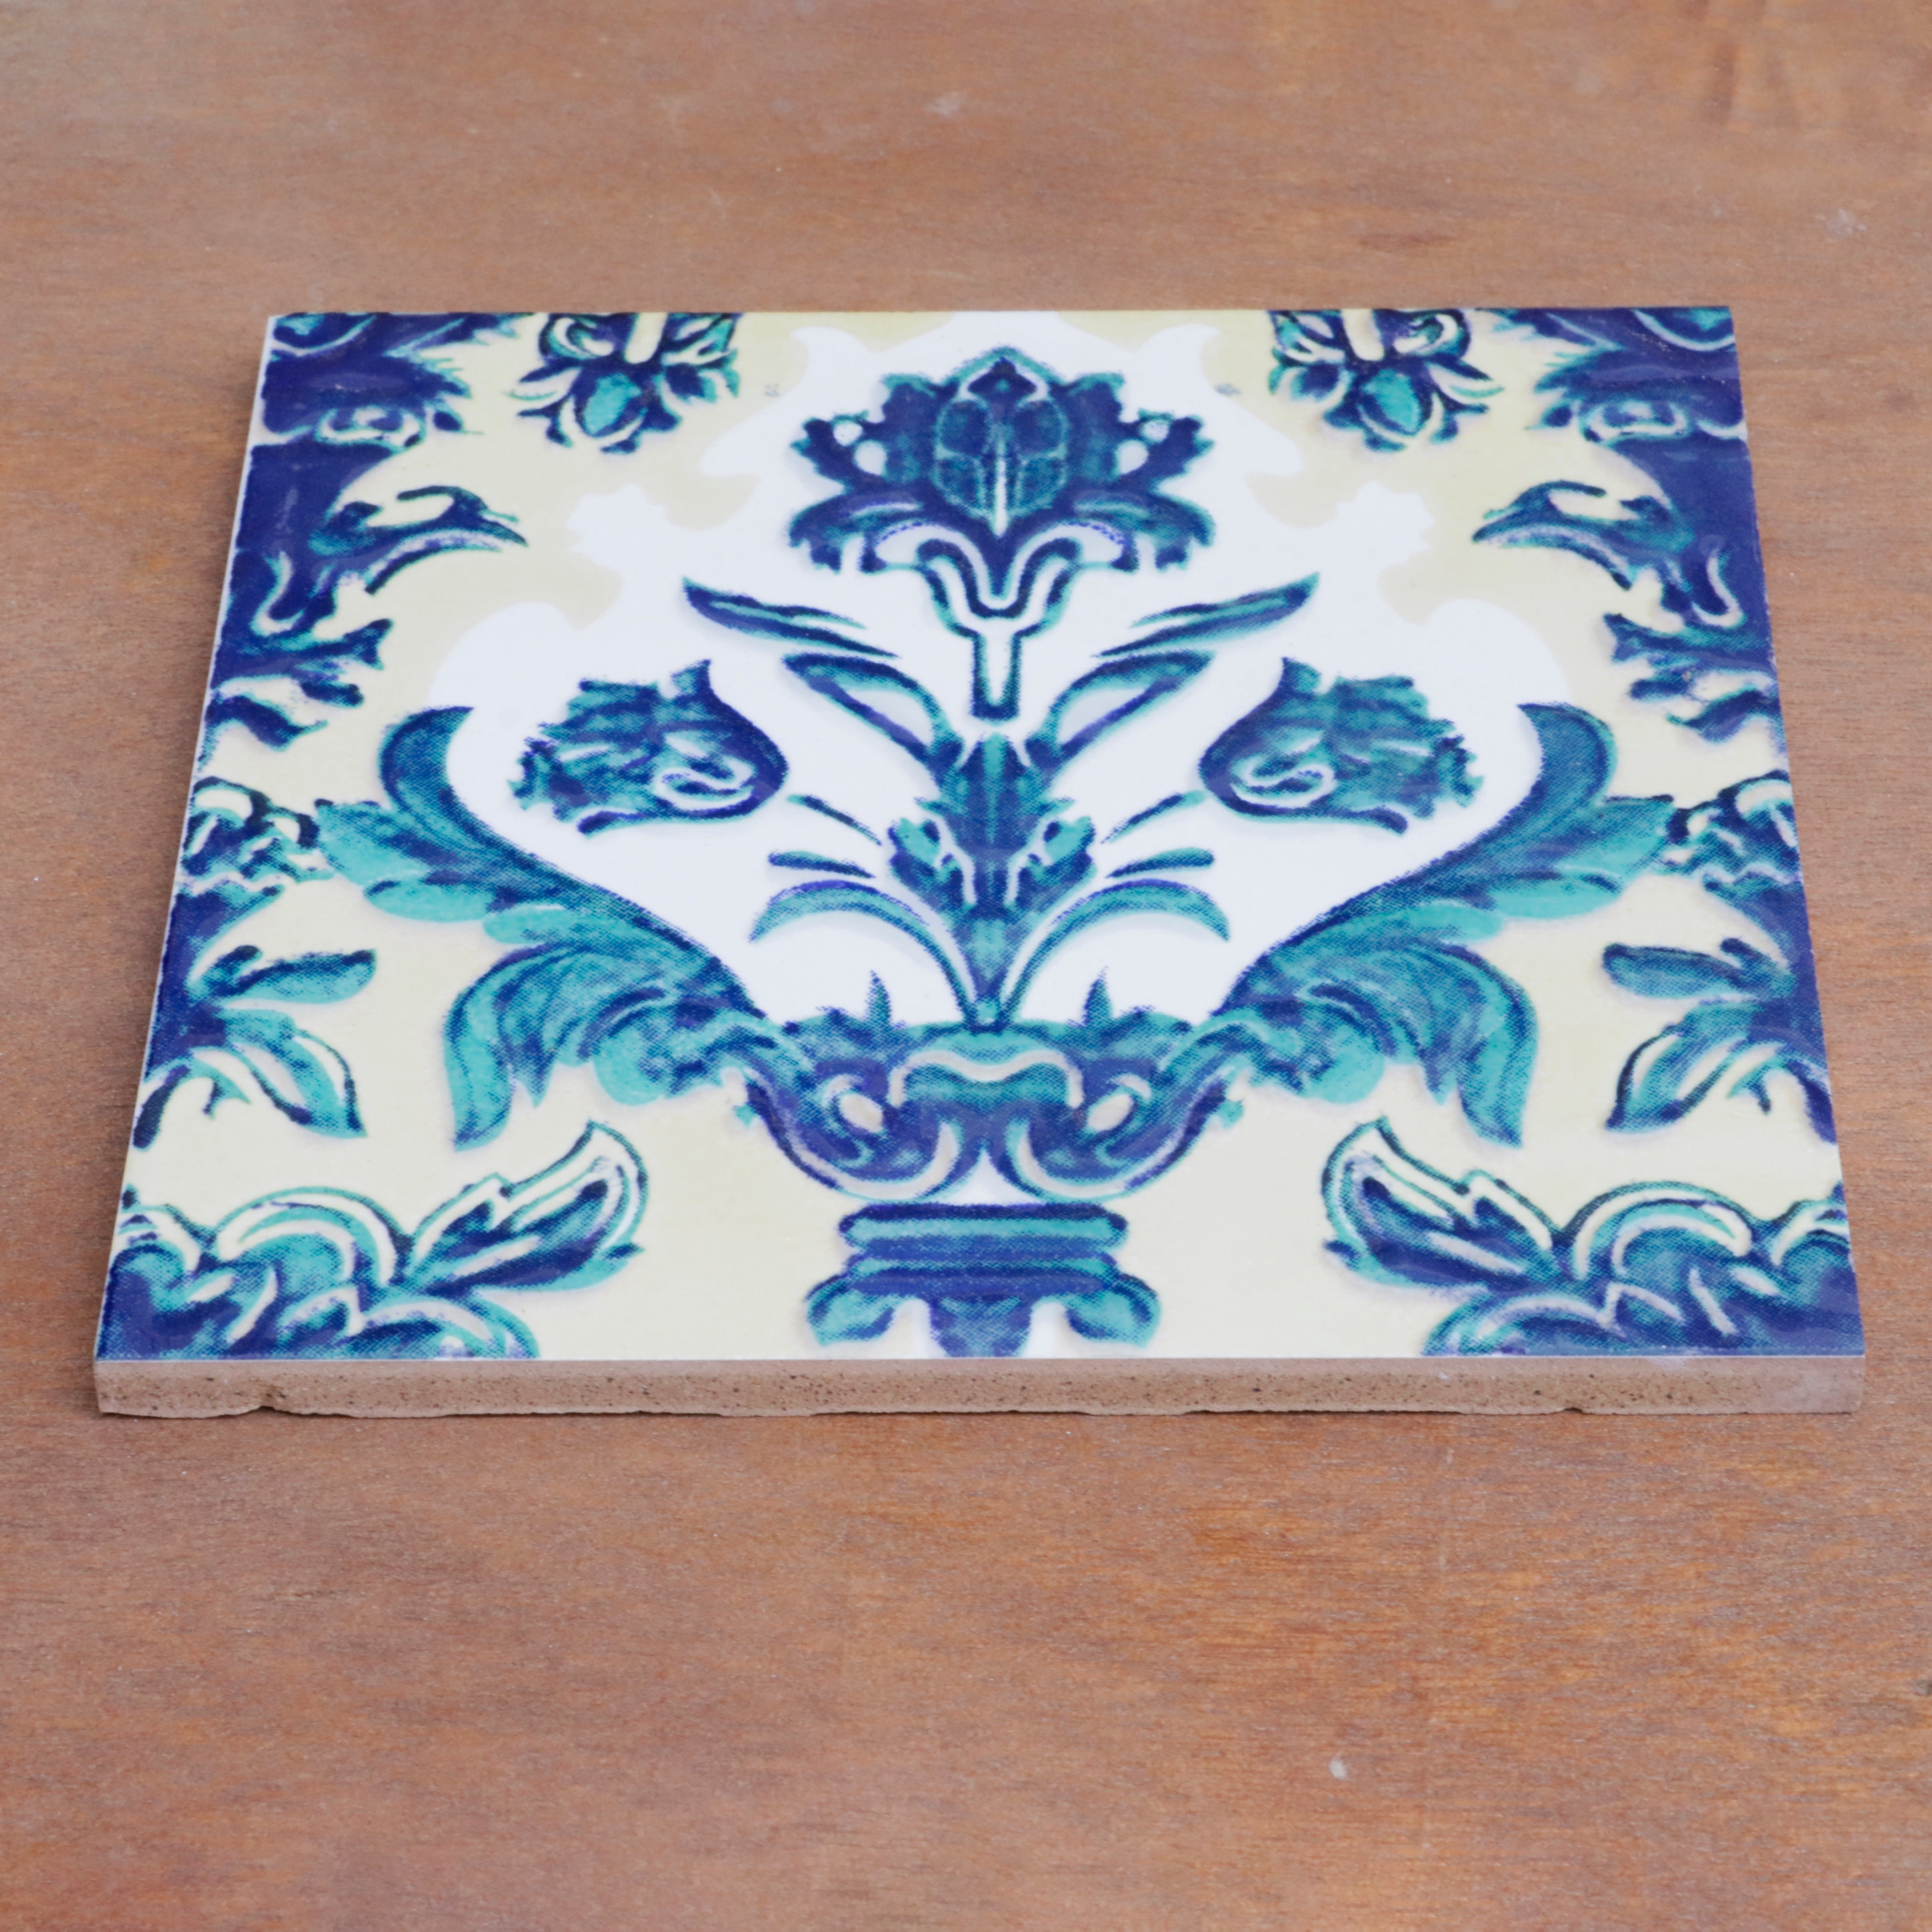 Montage Classic Flowered Designed Ceramic Square Tile Ceramic Tile